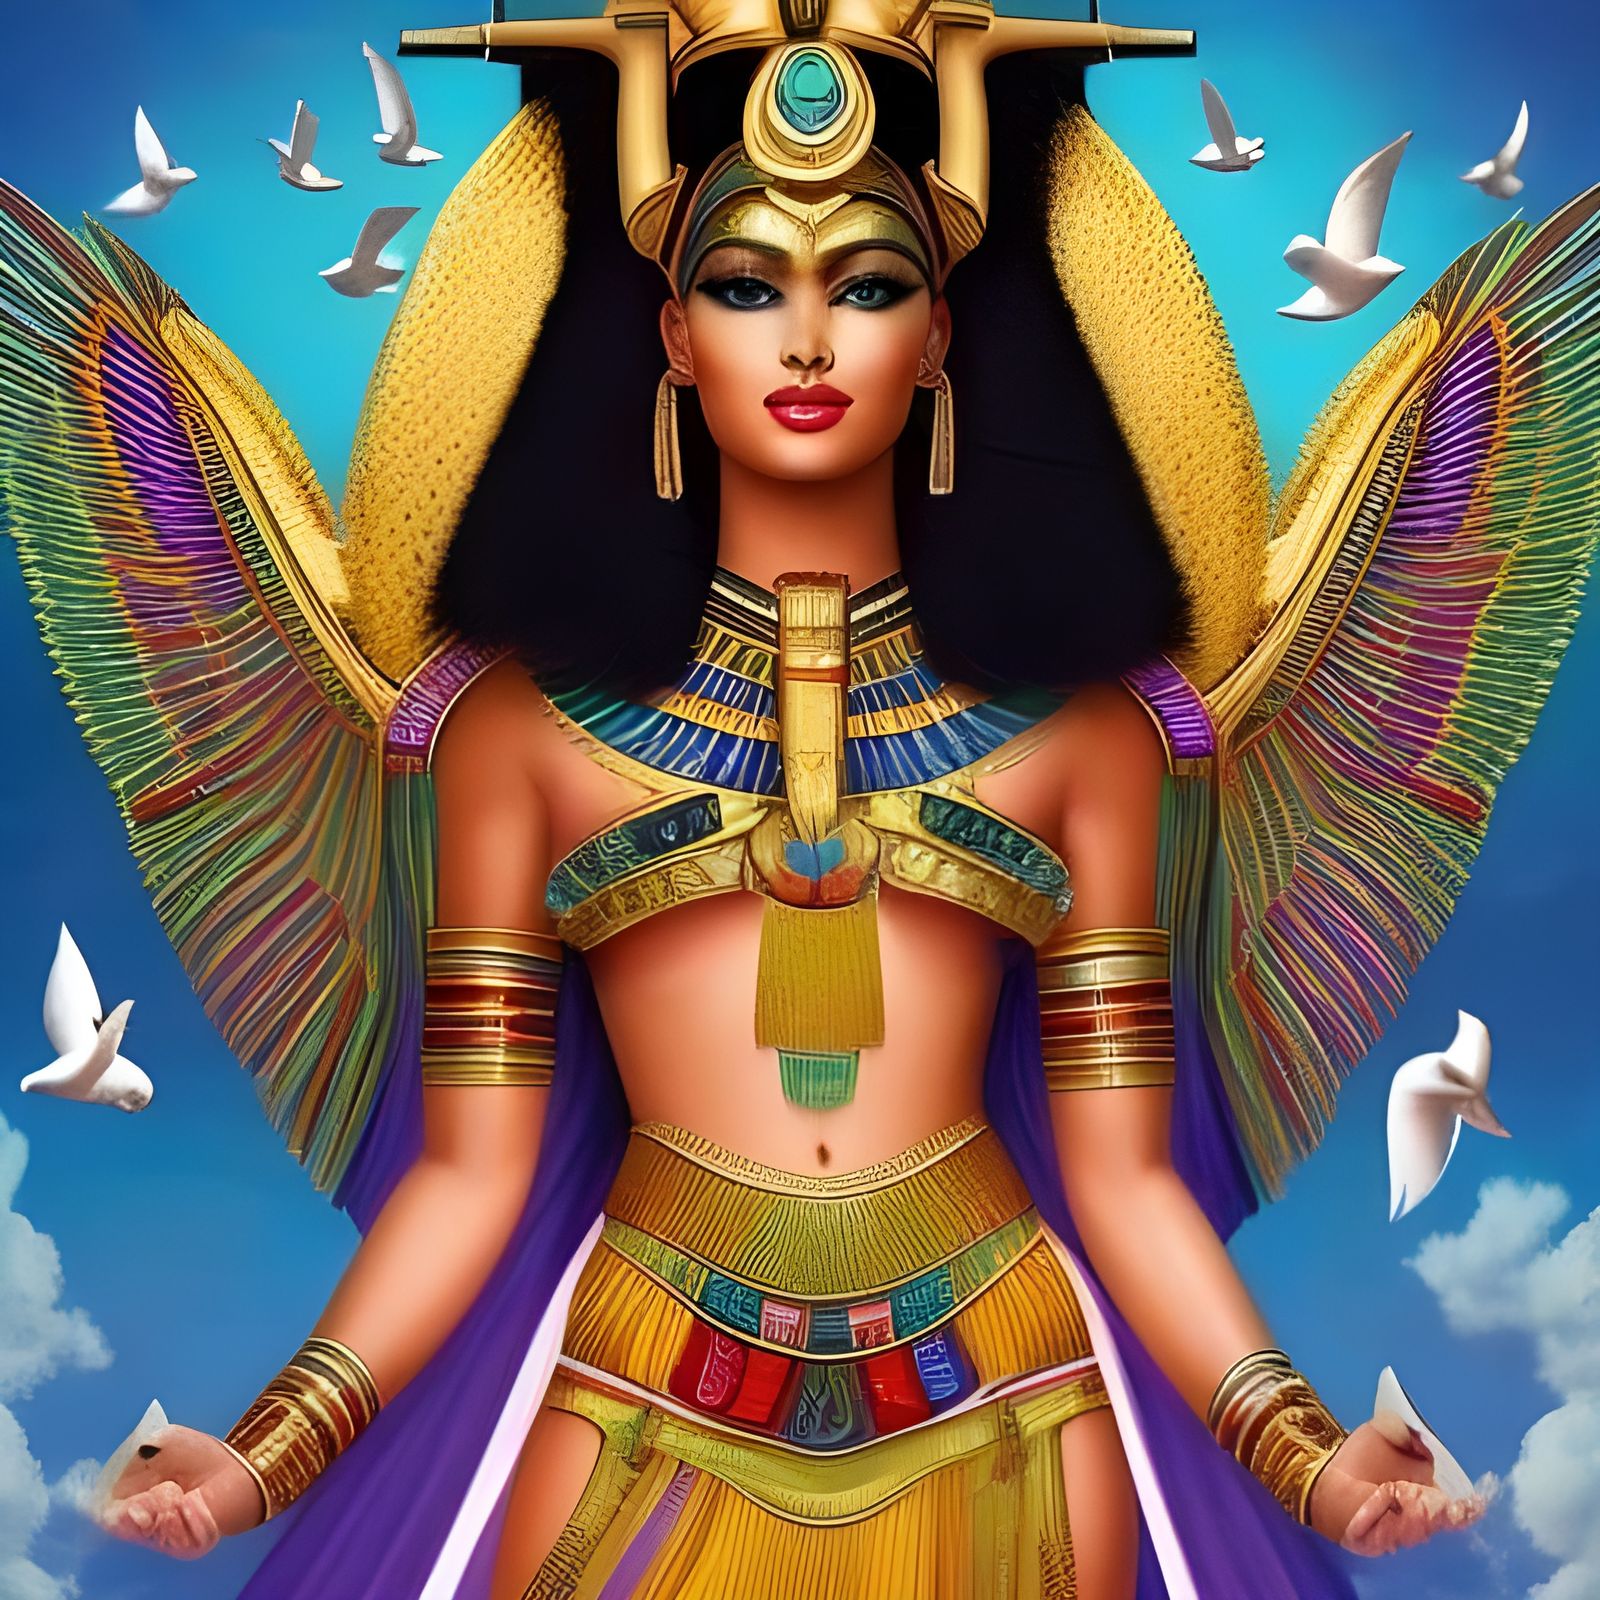 Egyptian Goddess Hathor Goddess Of Beauty Love Women The Sky Fertility Music And Dance